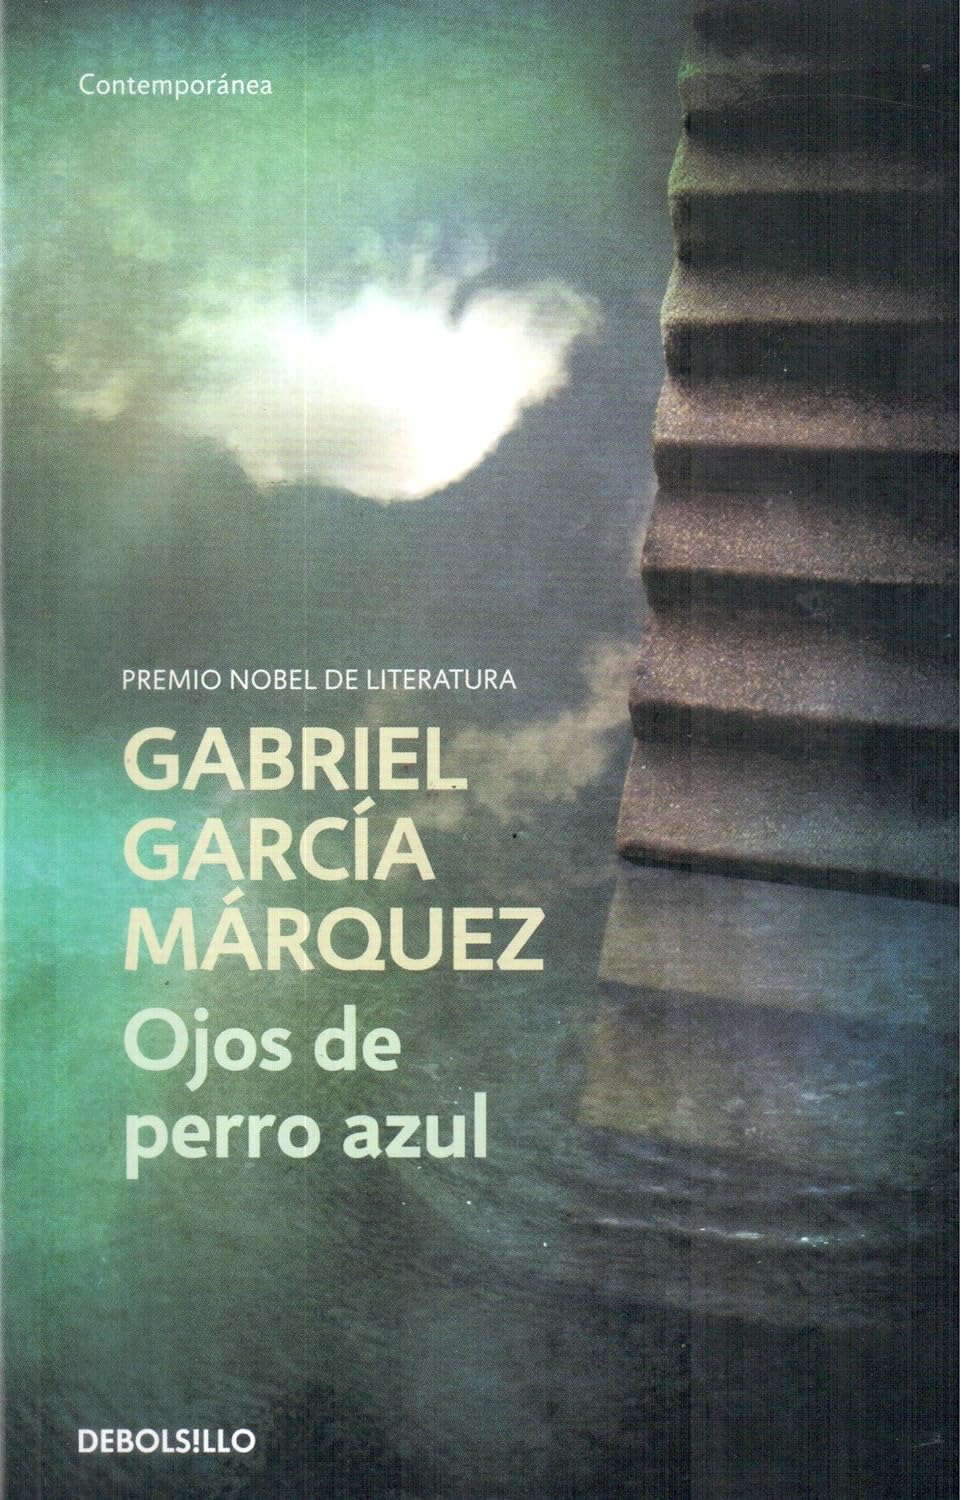 Gabriel Garcia Marquez - Ojos de perro azul